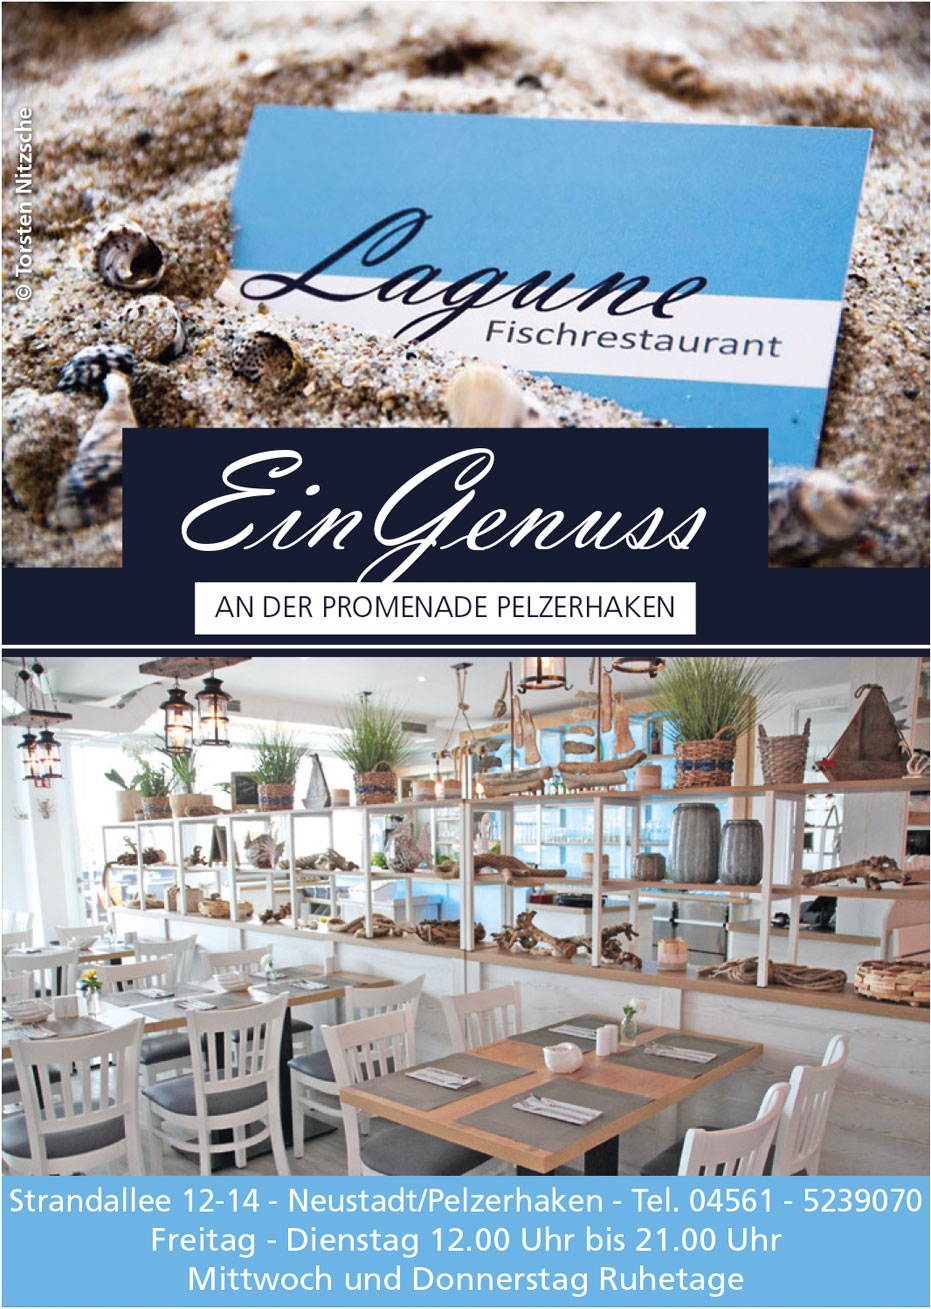 Lagune Fischrestaurant